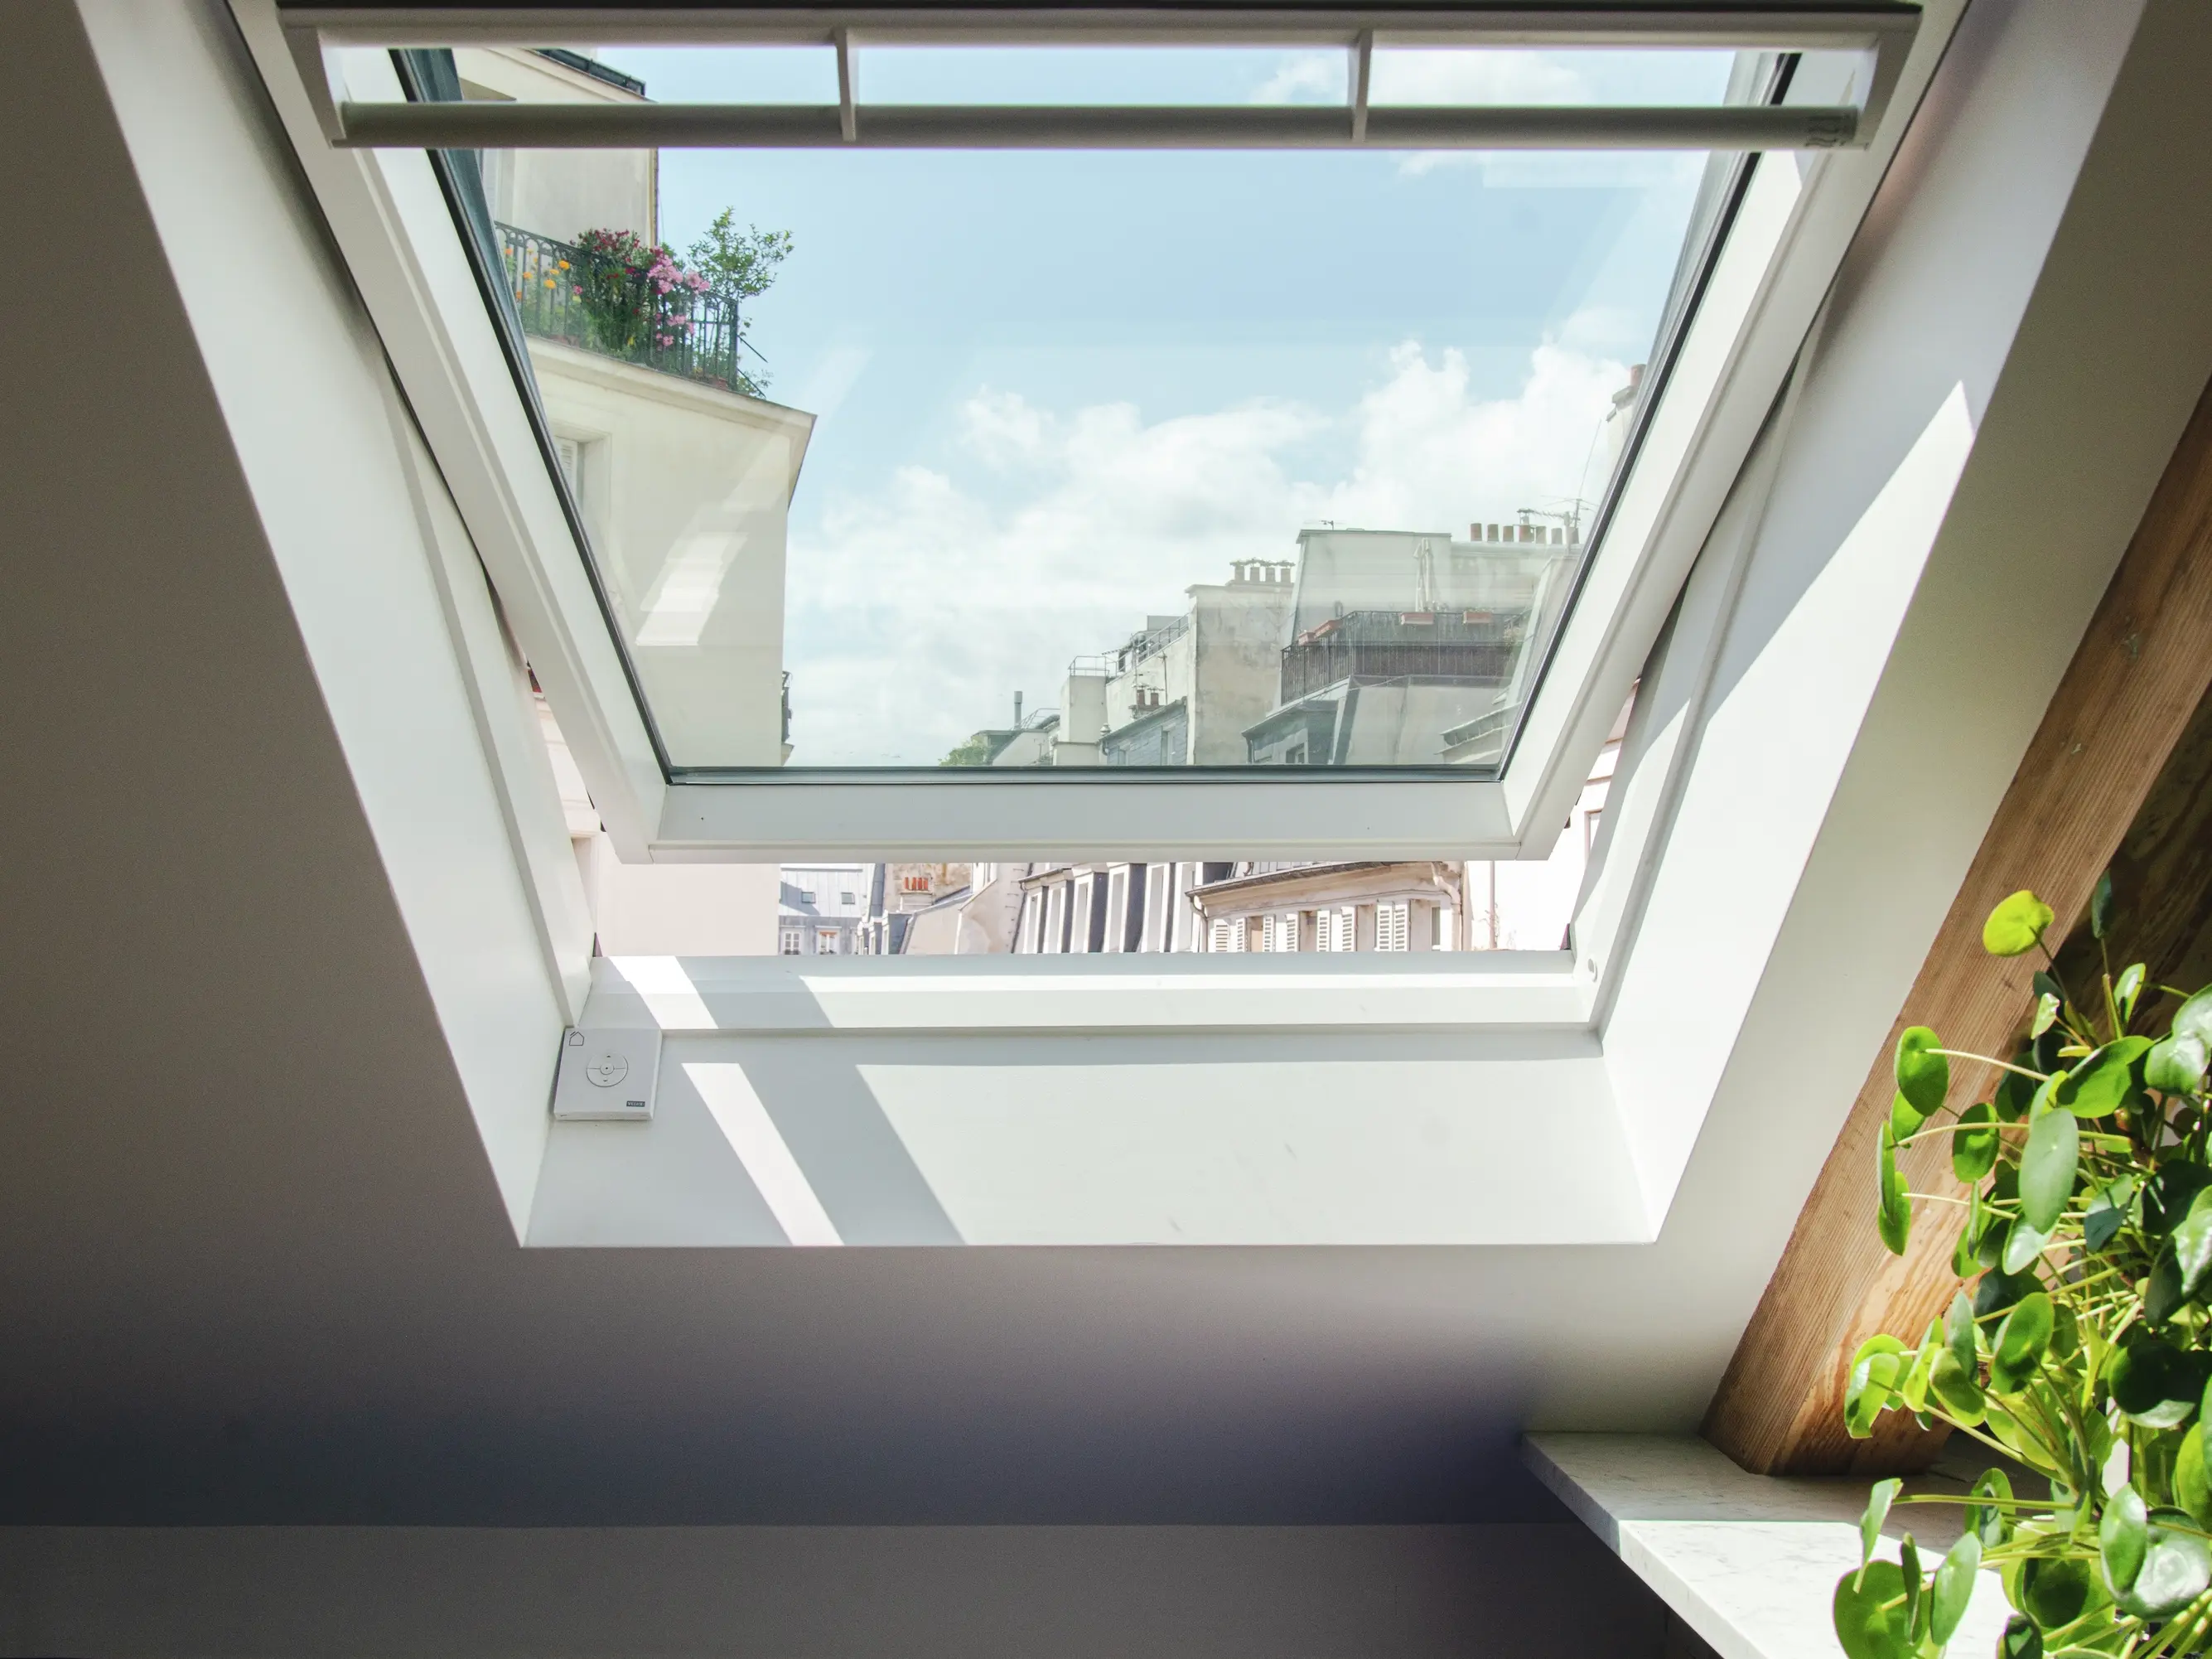 Fenêtre de toit VELUX dans la chambre du comble avec vue sur le ciel bleu et le paysage urbain.